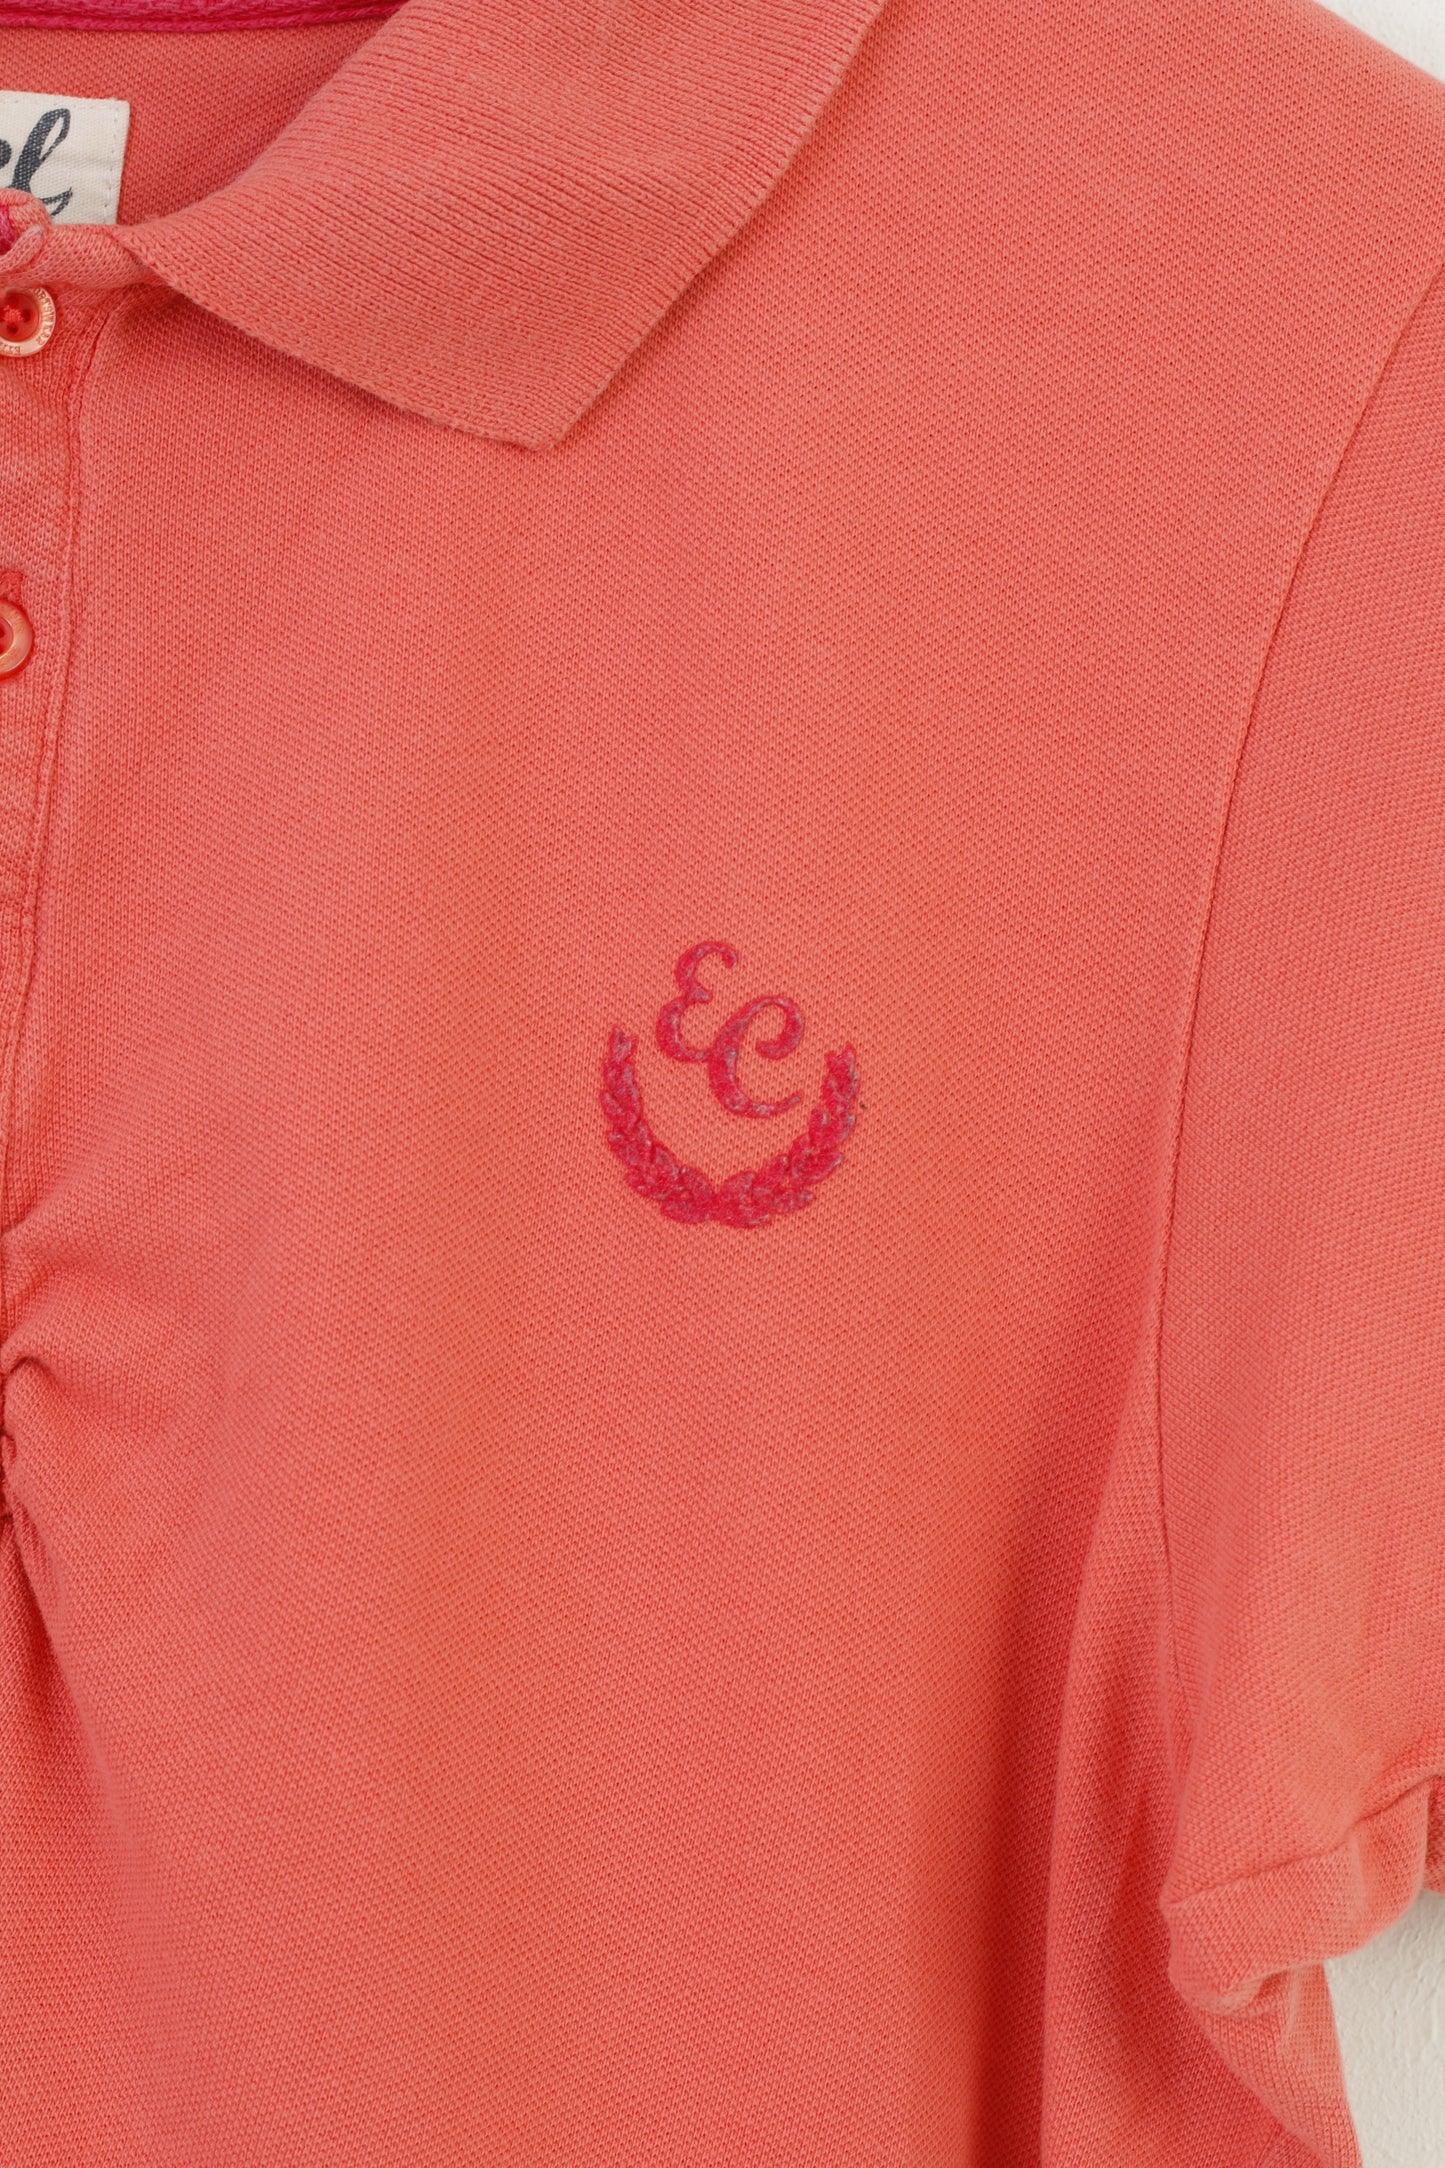 Etirel Polo da donna L in cotone manica corta arancione fondo estivo top sportivo vintage